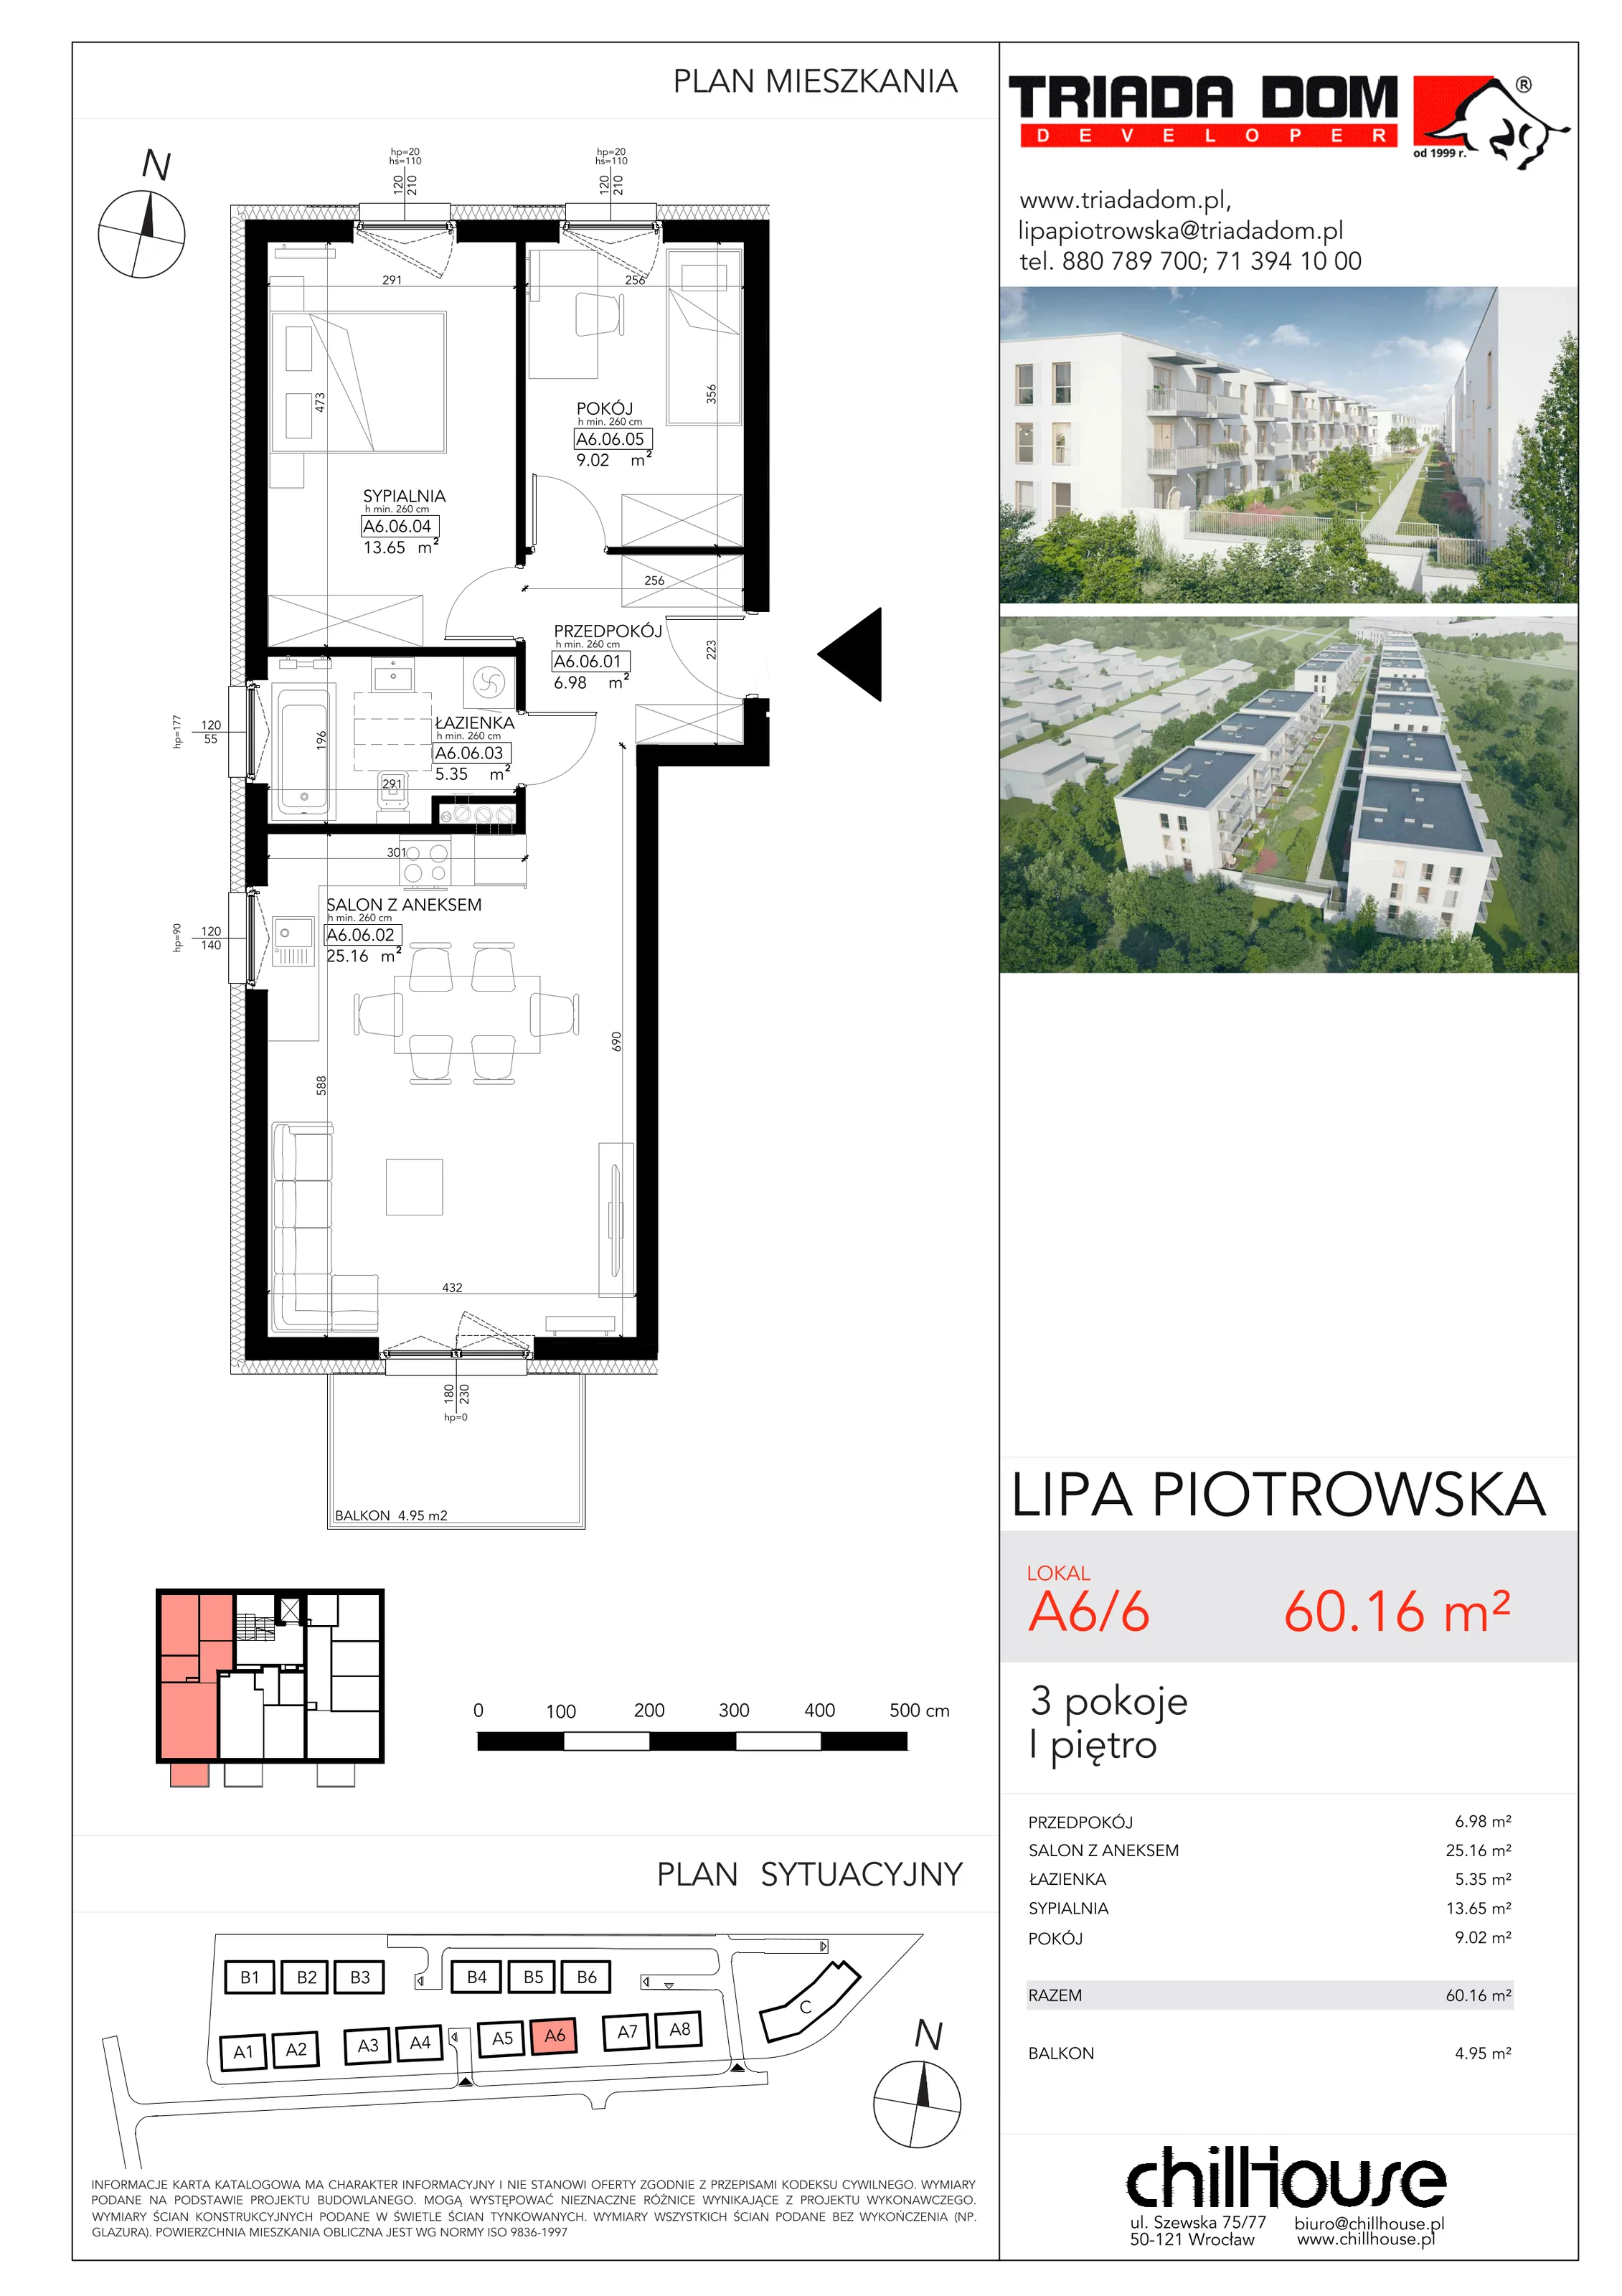 Mieszkanie 60,16 m², piętro 1, oferta nr A66, Lipa Piotrowska, Wrocław, Lipa Piotrowska, ul. Lawendowa / Melisowa